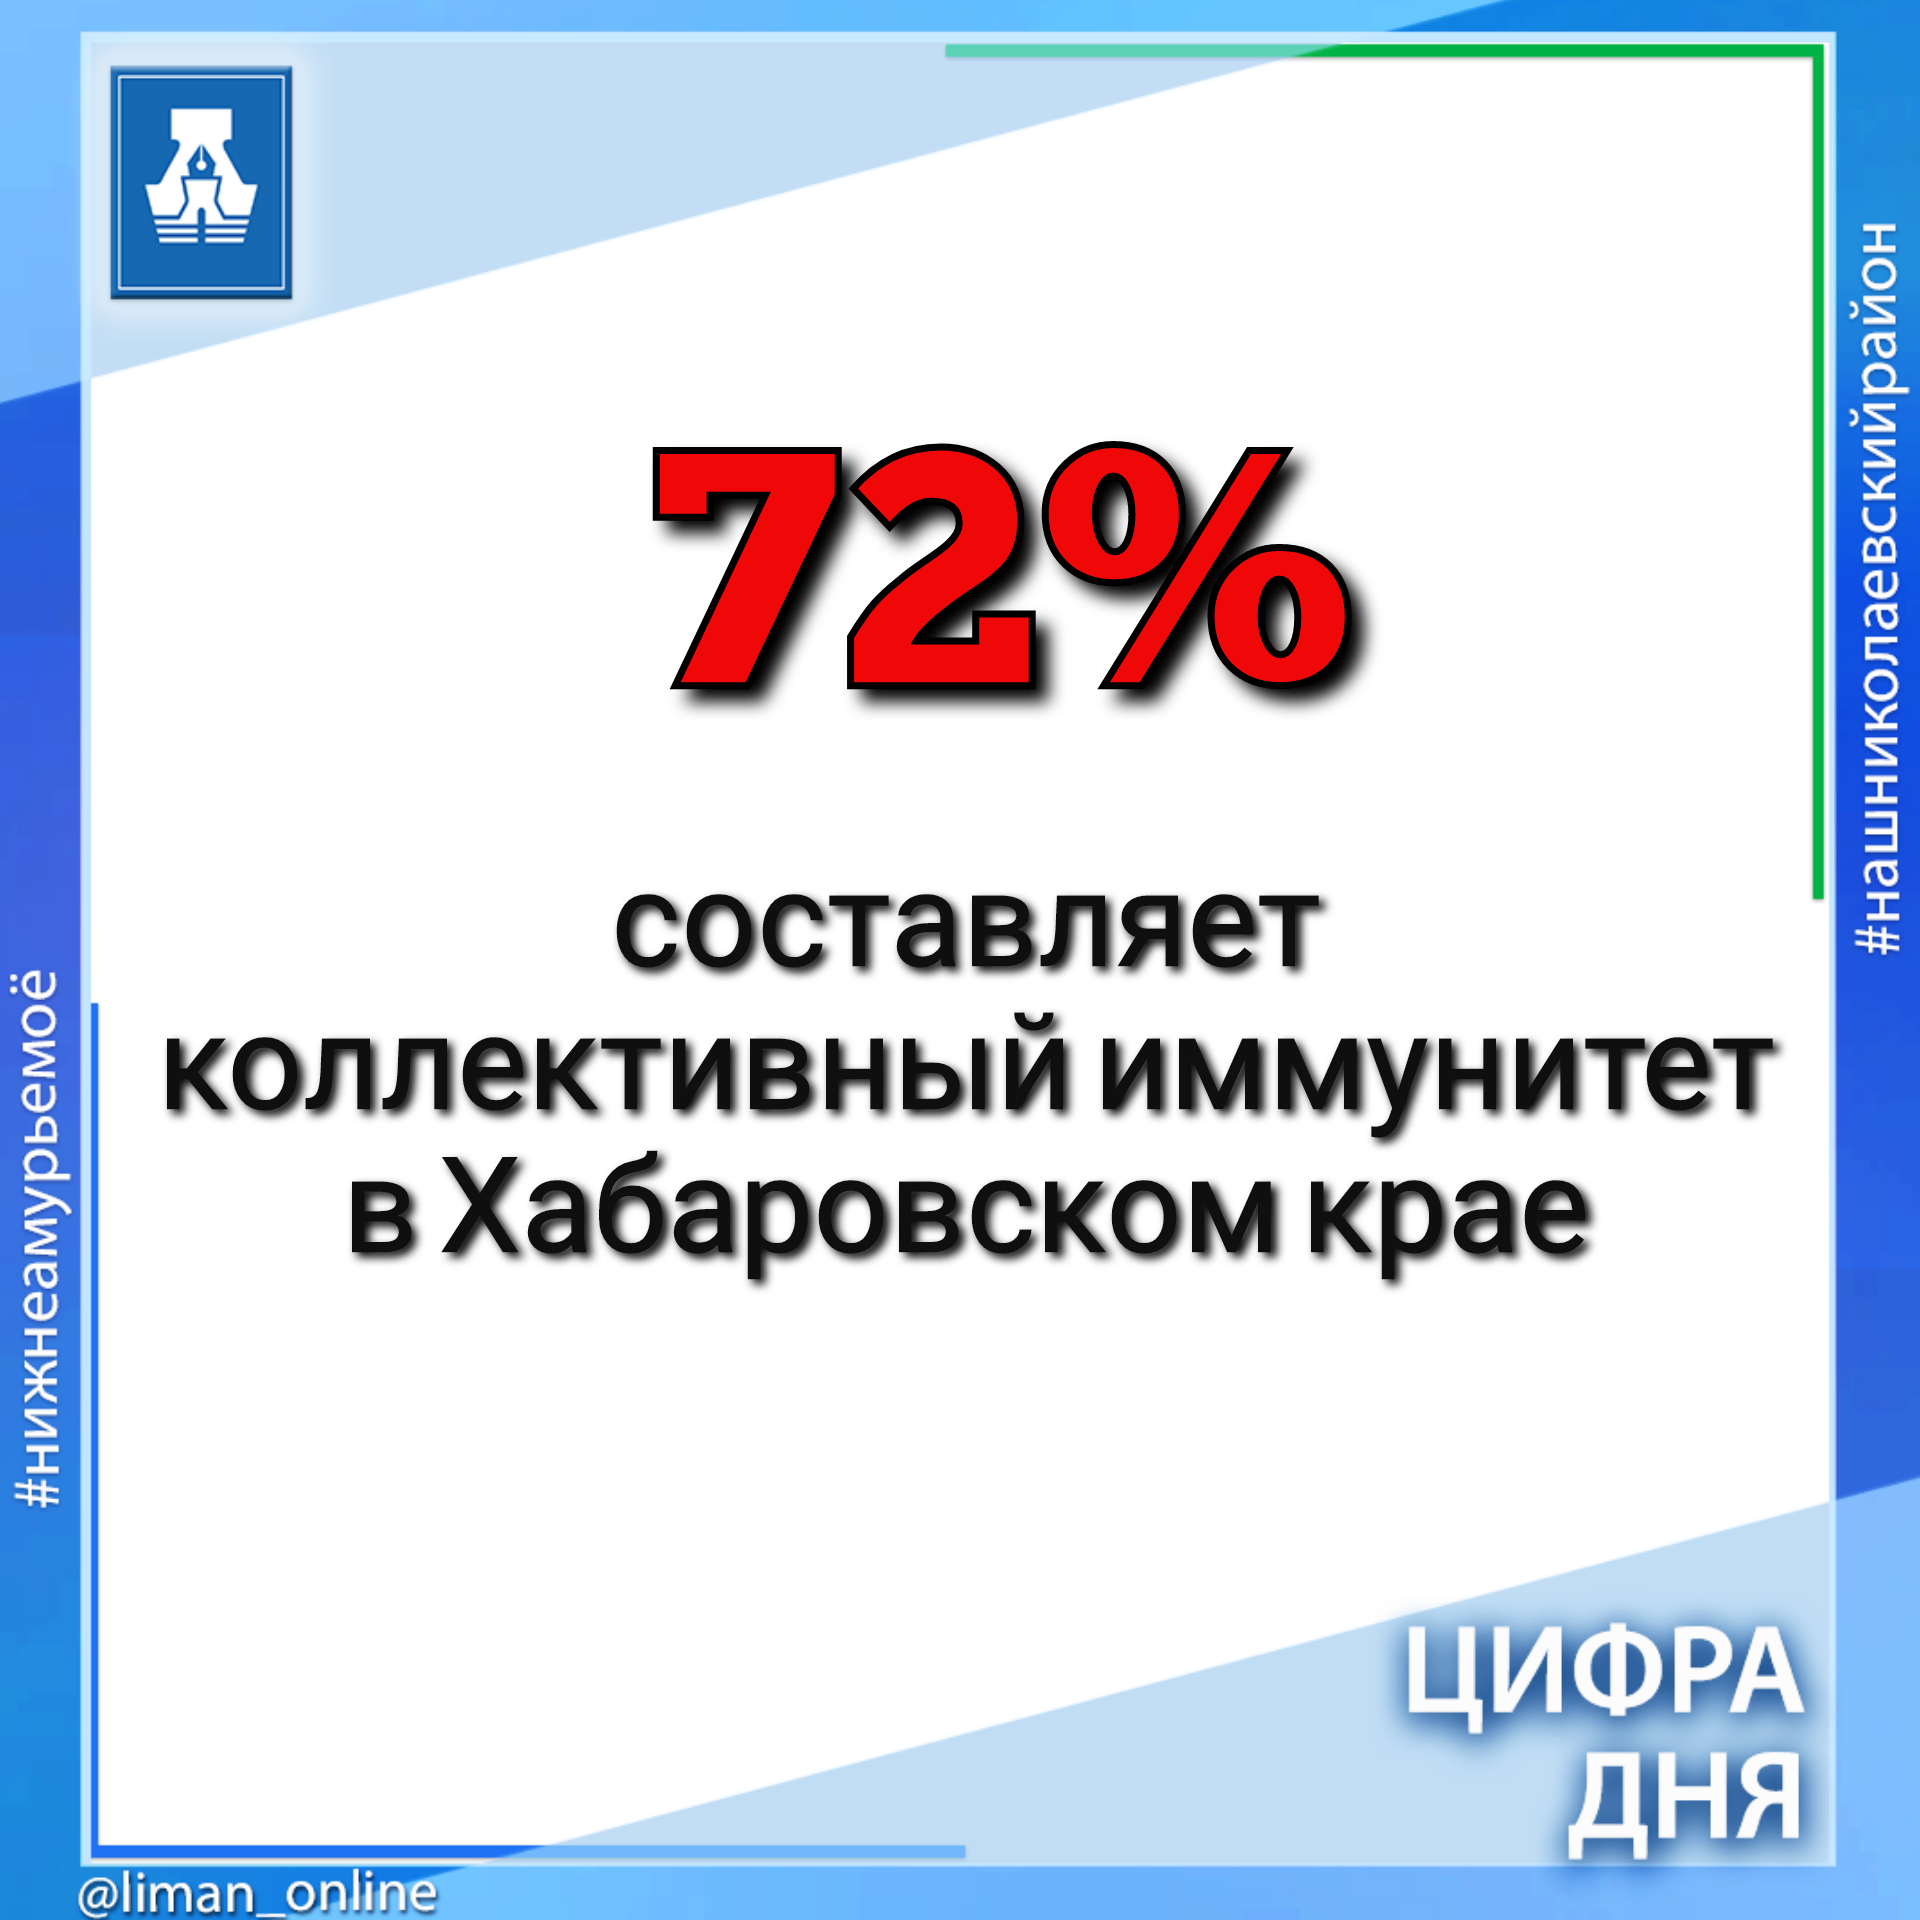 72% составляет коллективный иммунитет в Хабаровском крае